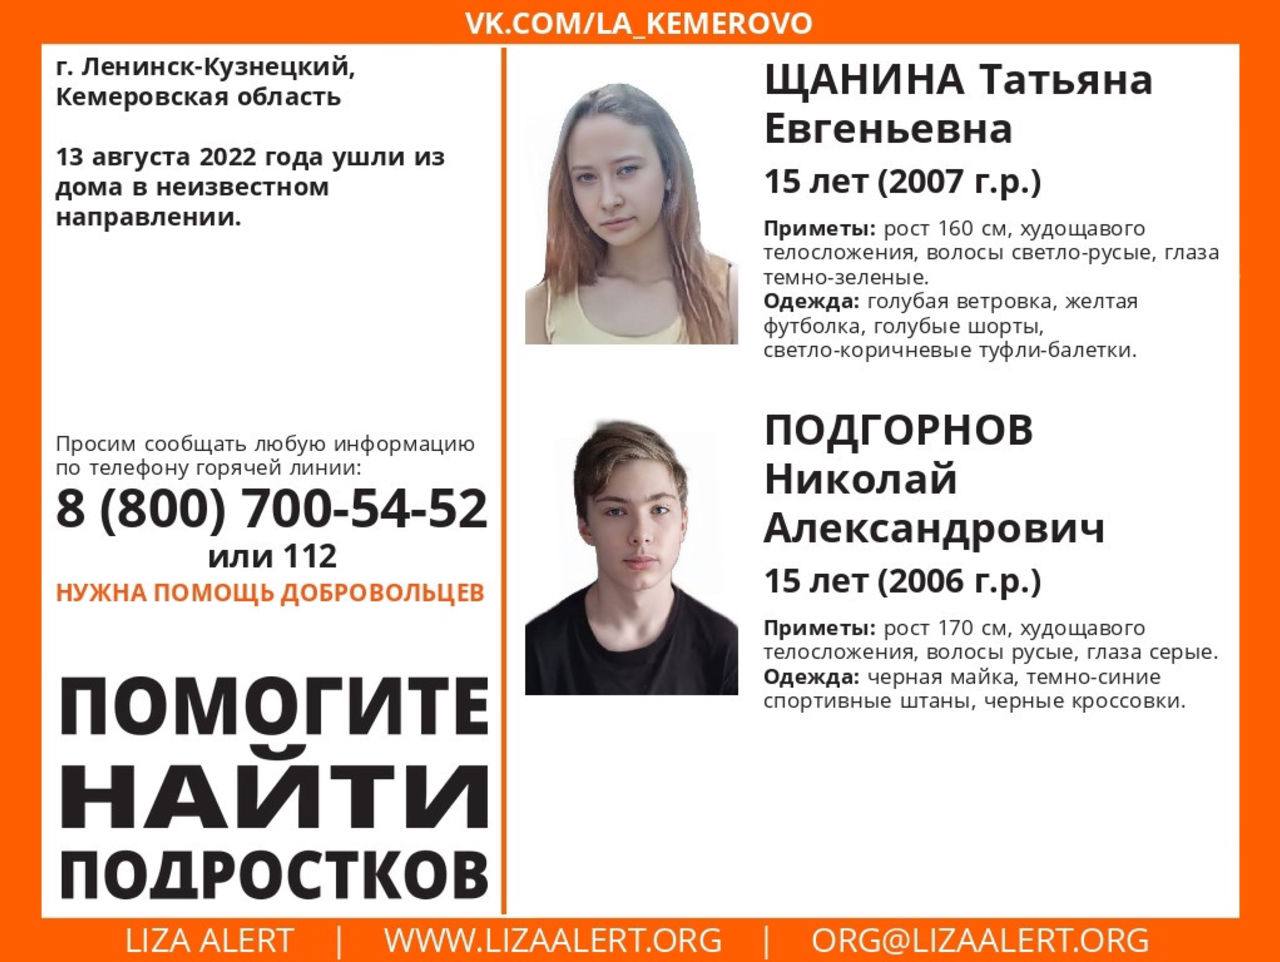 Что будет если выйти ночью 2 августа. Пропал подросток. Пропавшие дети в Ленинск-Кузнецке. Пропавние лети лененс Кузнецкий.